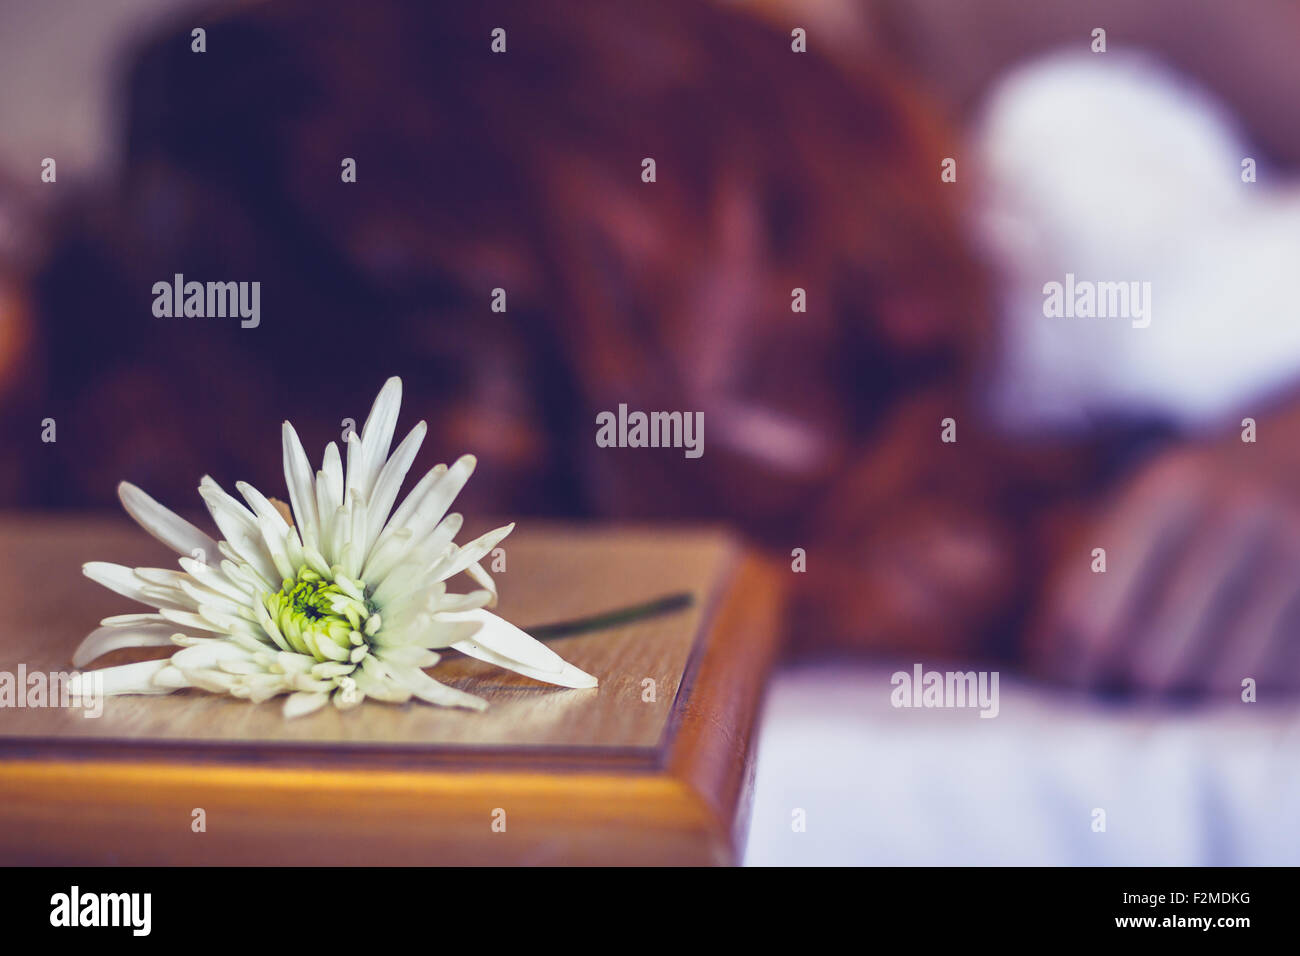 Fleur sur table de nuit avec man in background Banque D'Images